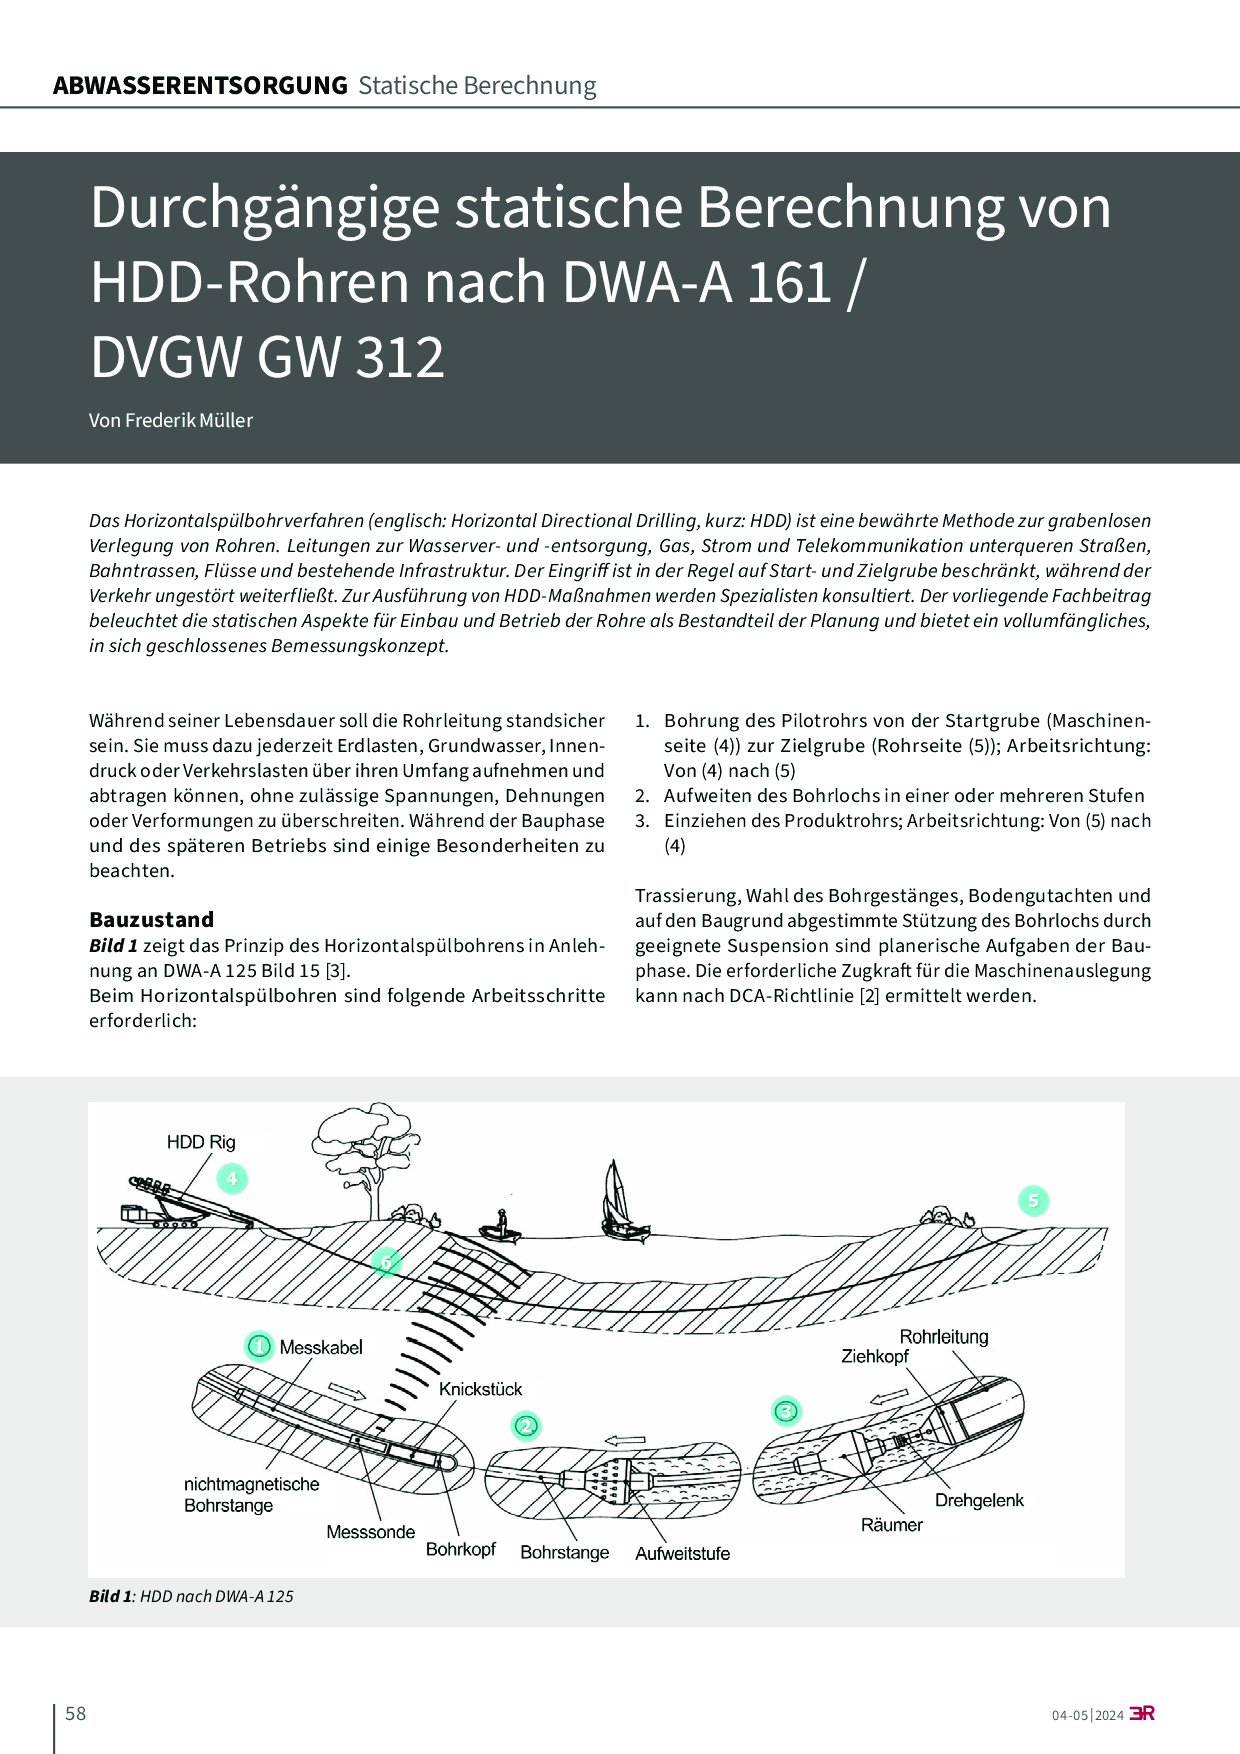 Durchgängige statische Berechnung von HDD-Rohren nach DWA-A 161 / DVGW GW 312